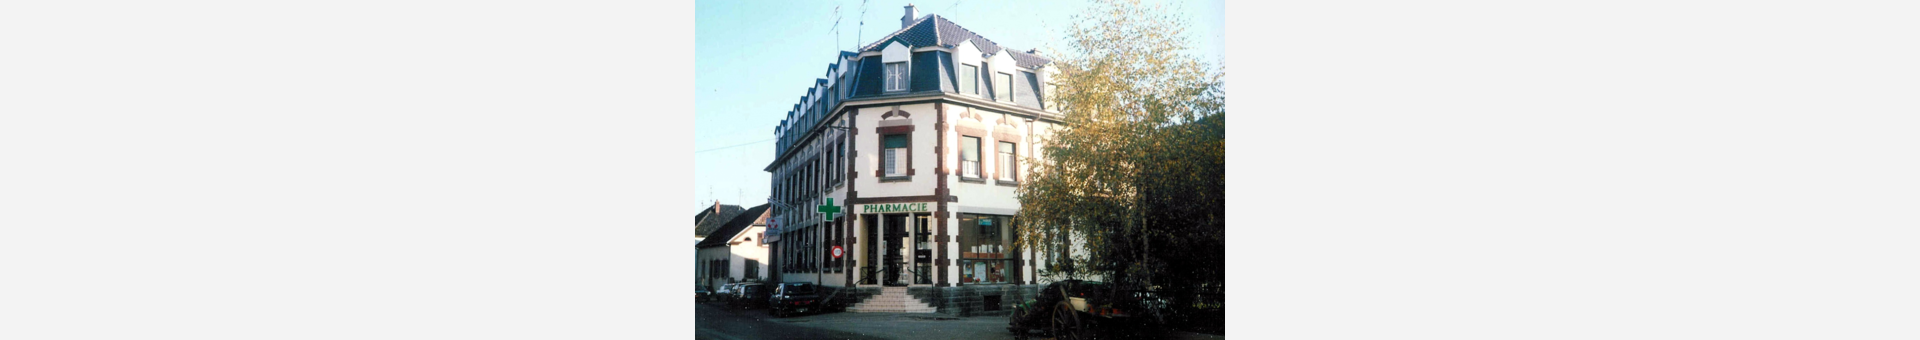 Pharmacie Pfiffelmann,Lautenbach